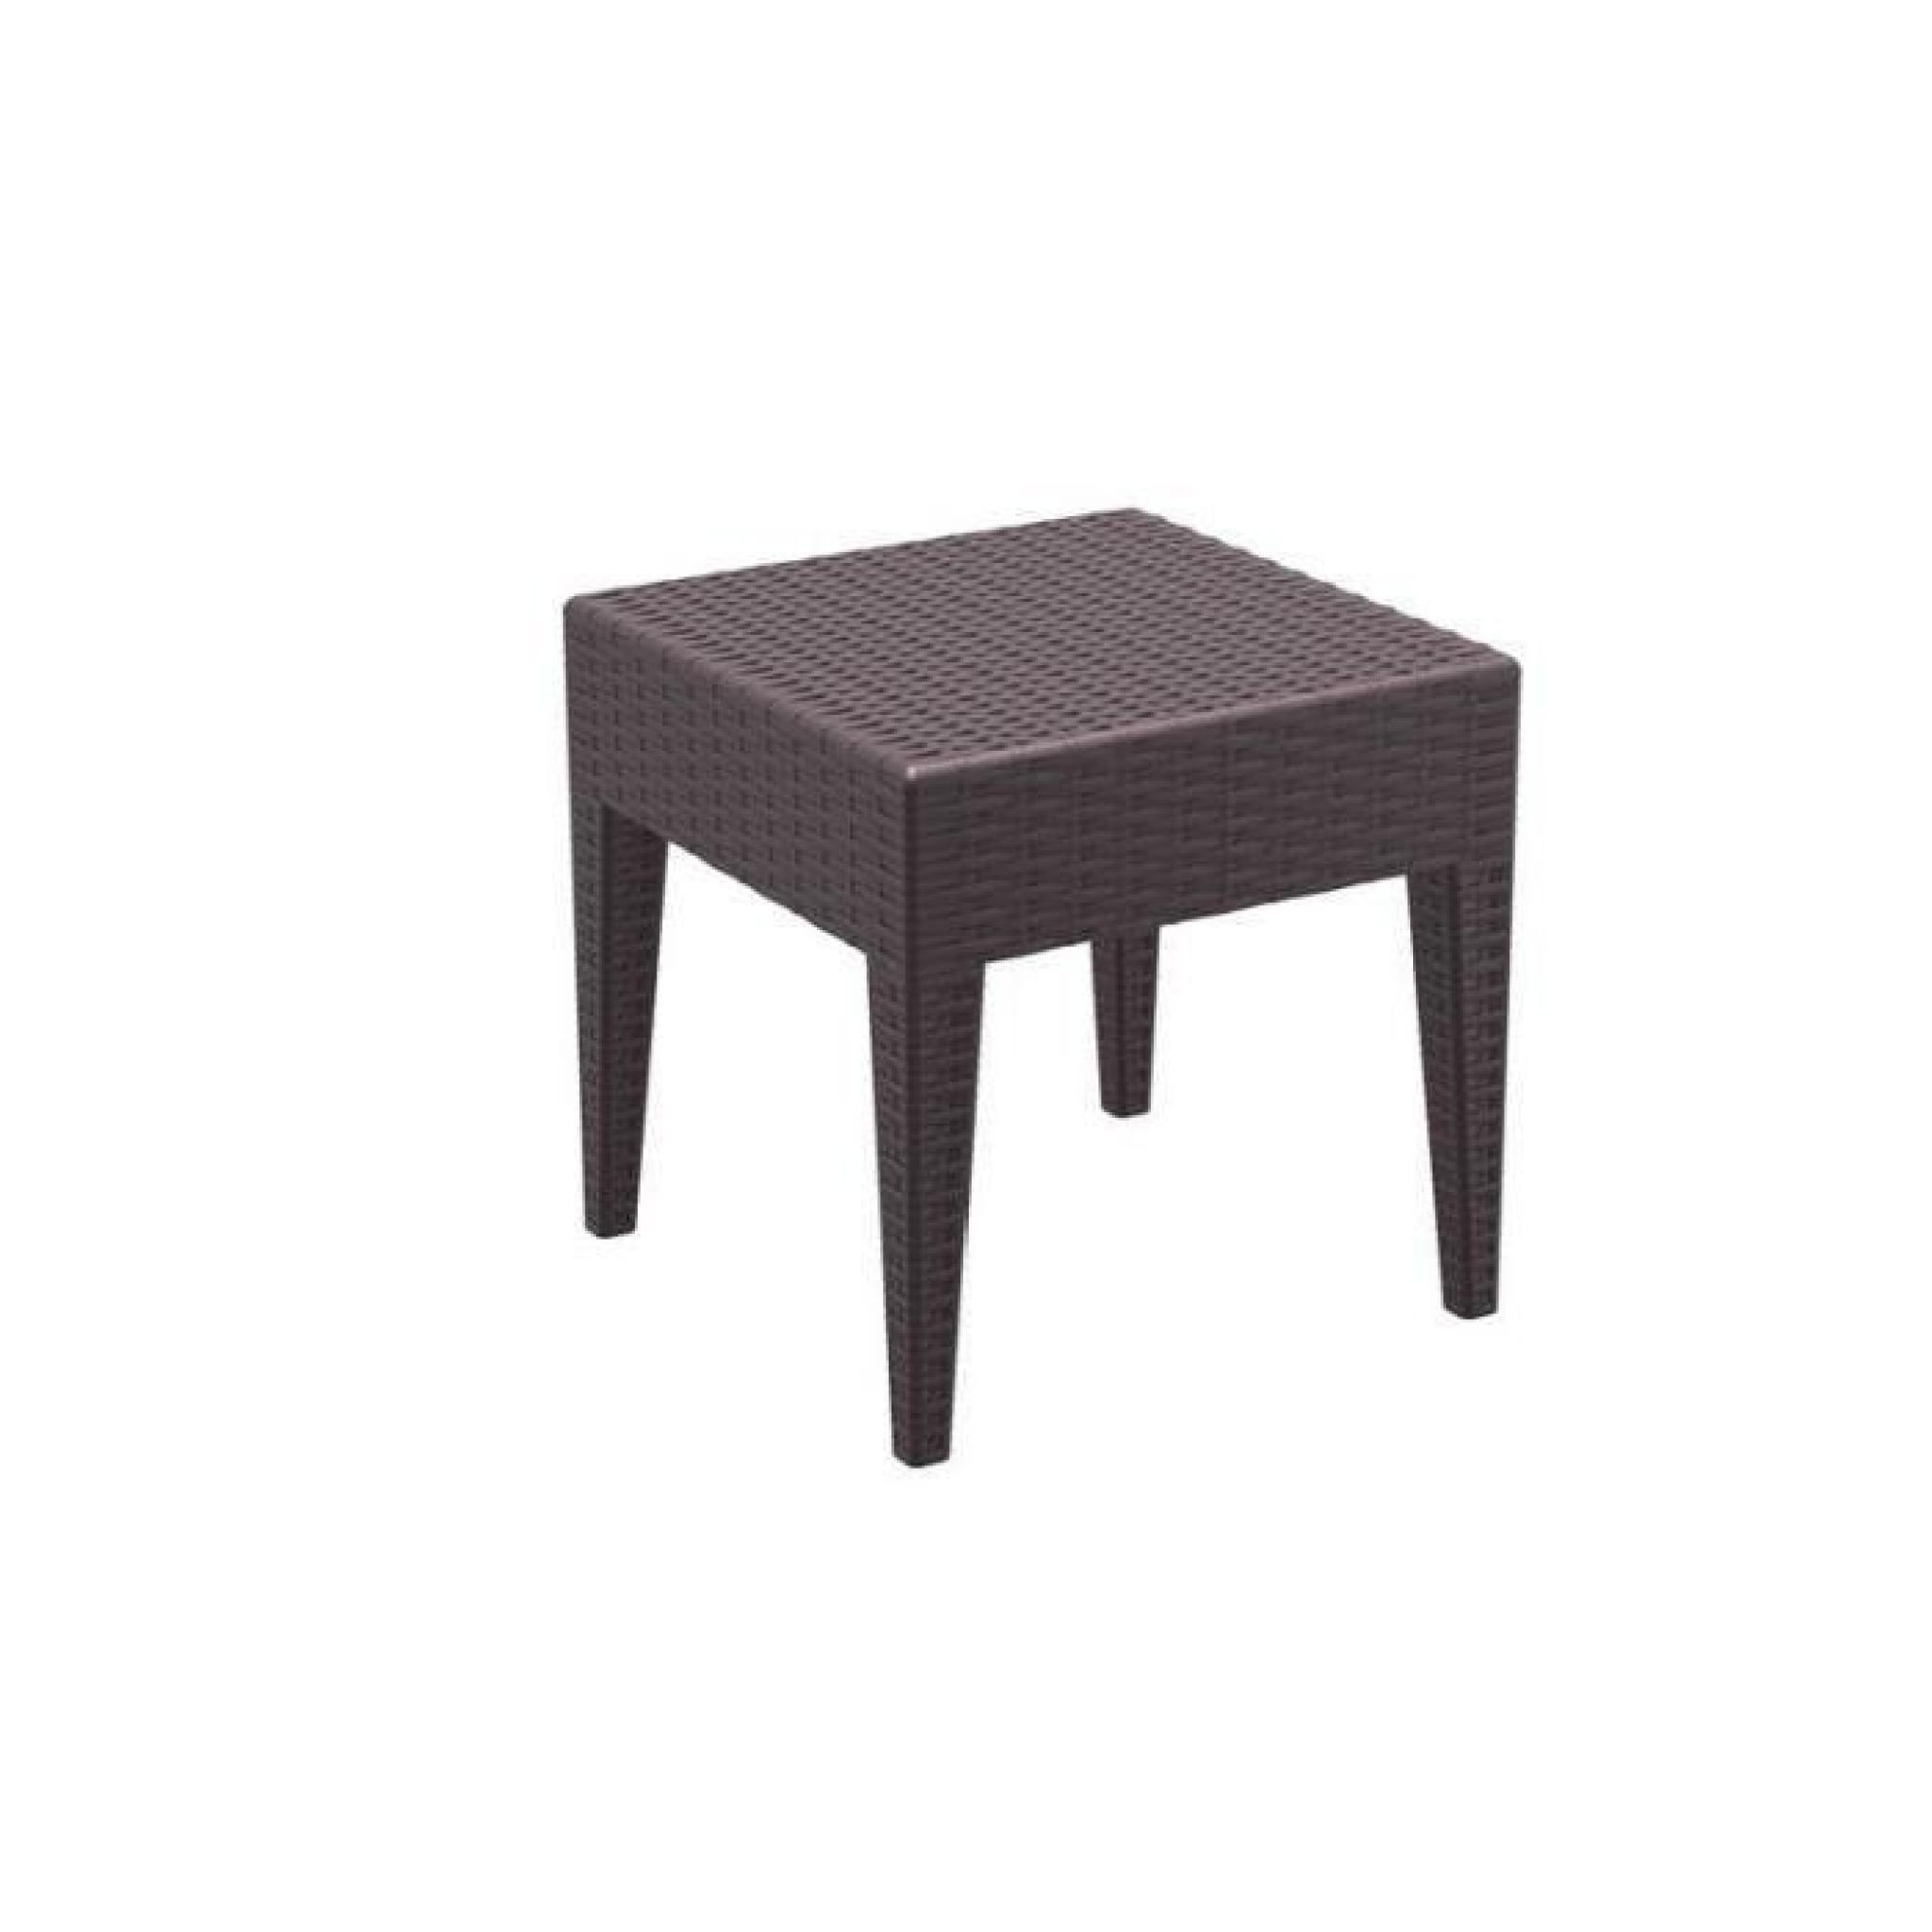 Table basse de jardin carré étanche en plastique marron 45x45x45 cm MDJ10027